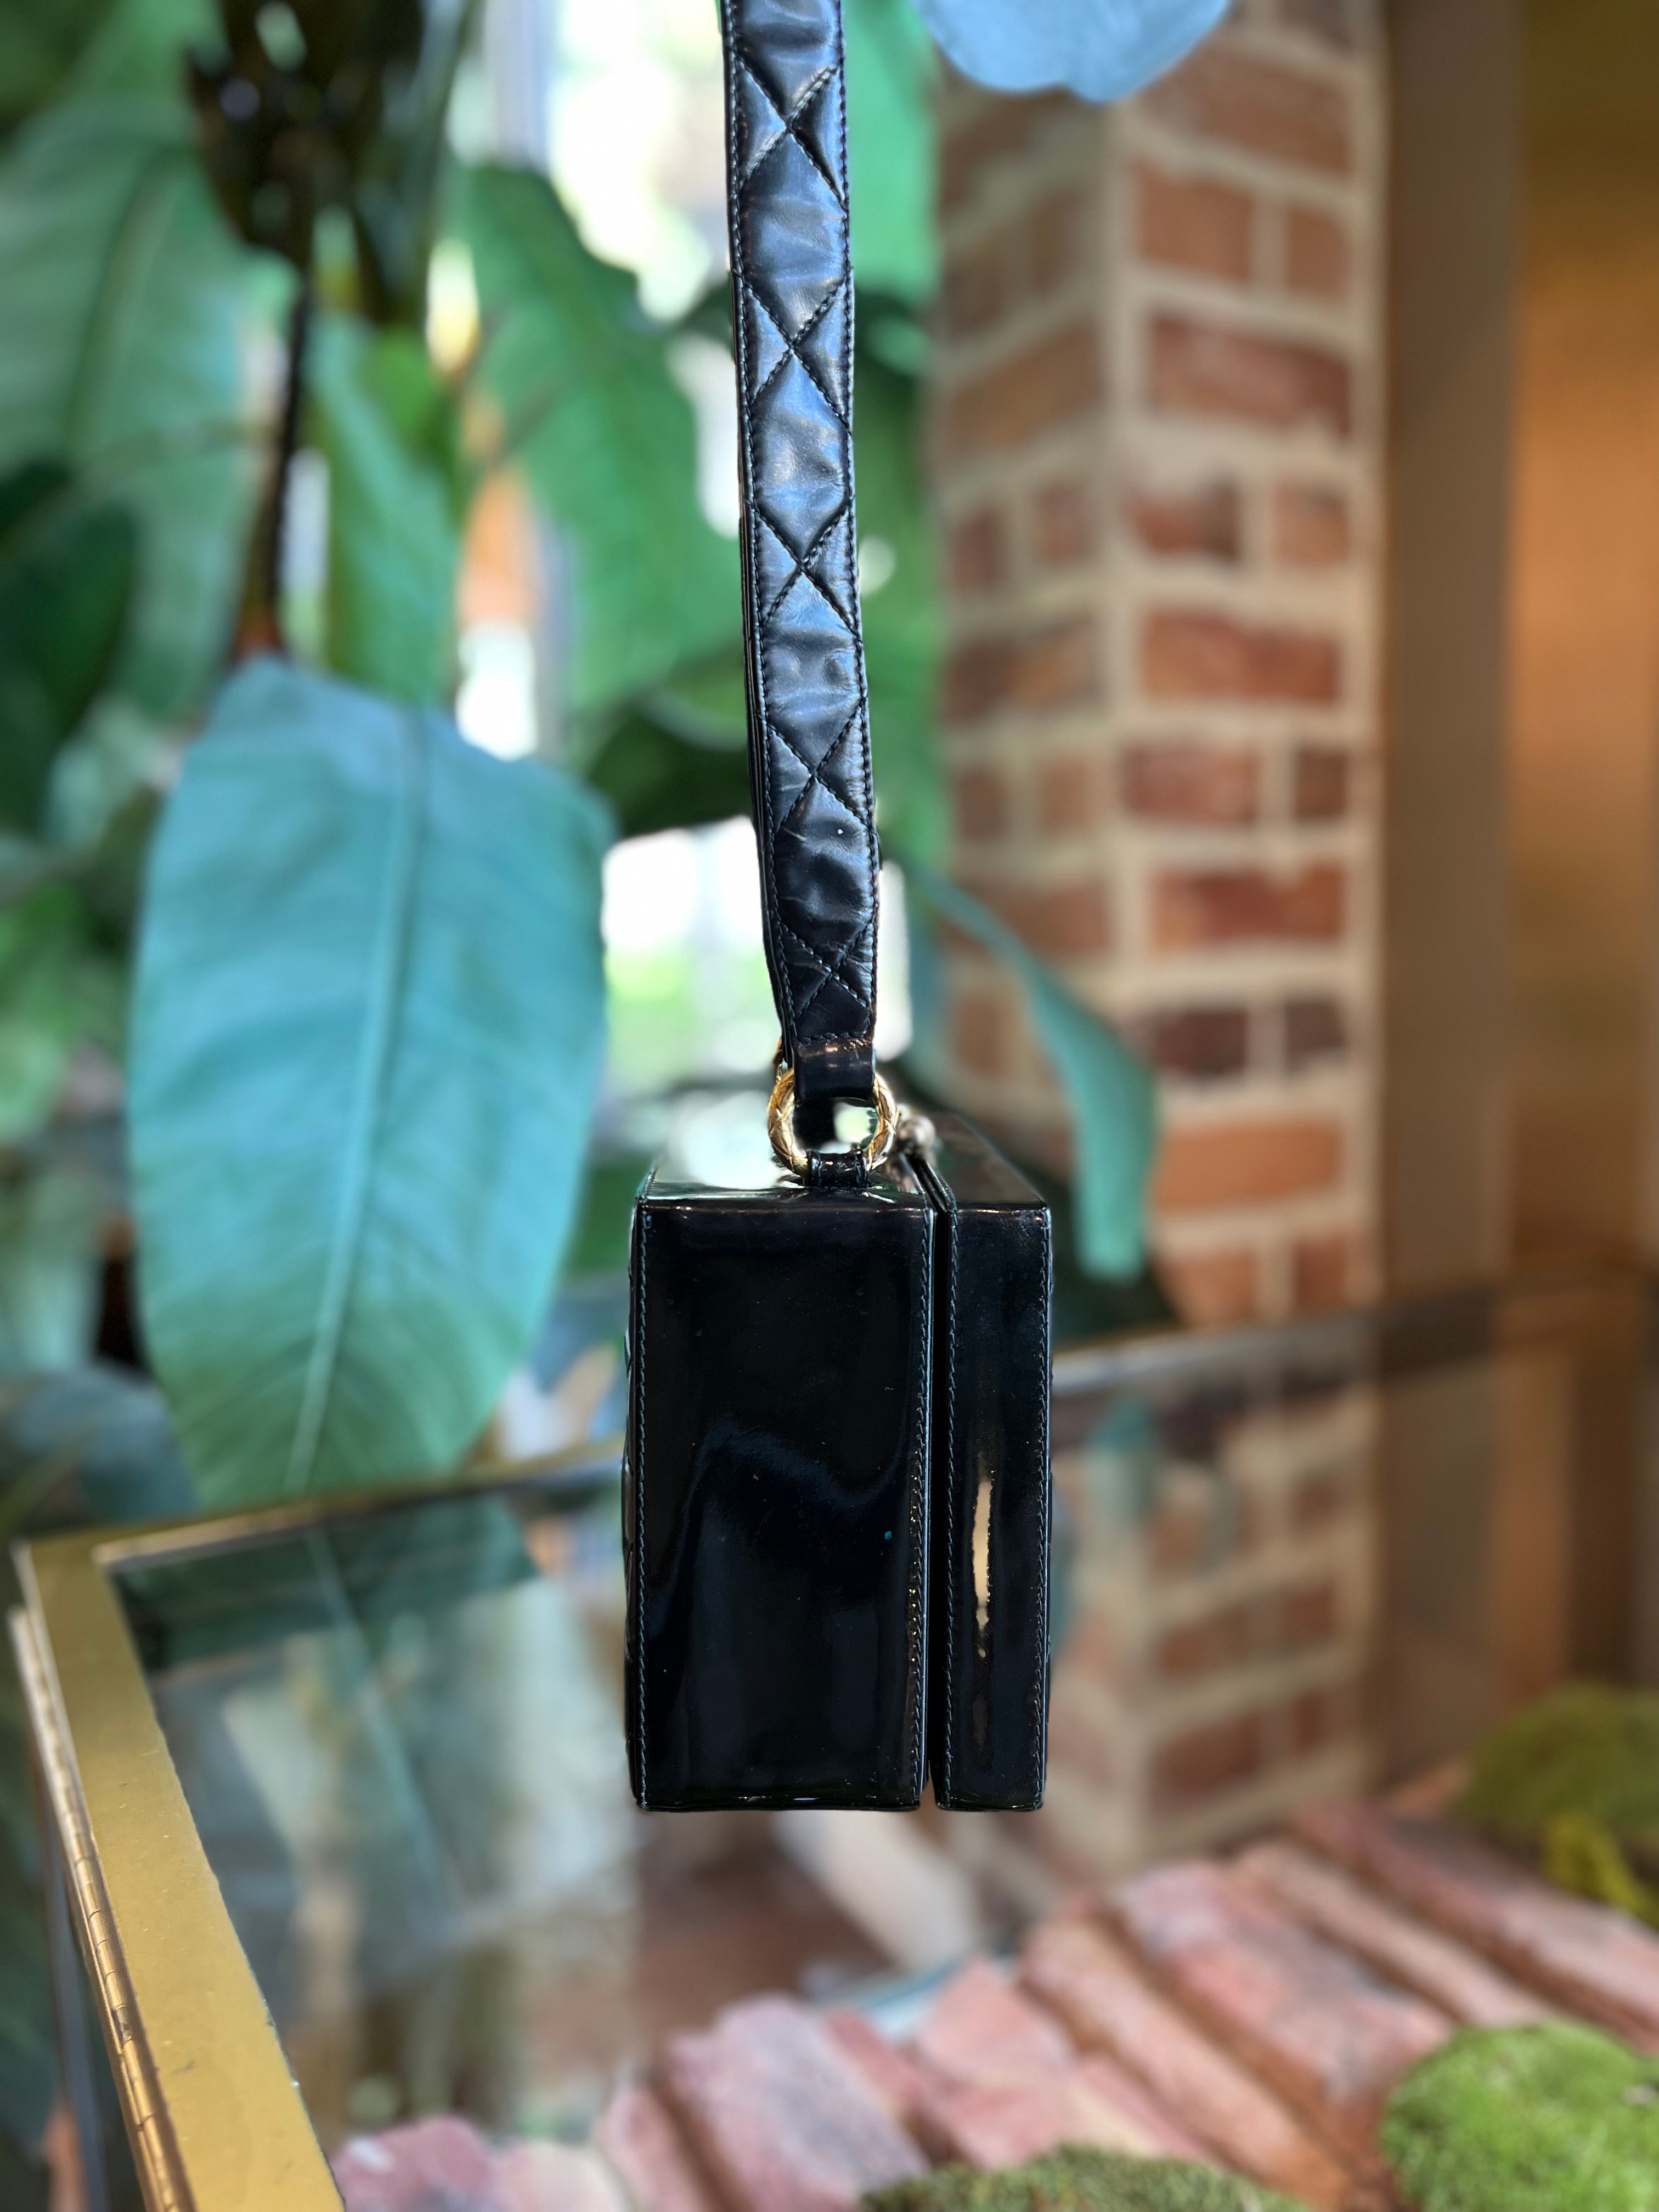 Chanel Vintage Black Patent Leather Vanity Case Shoulder Bag - LAR